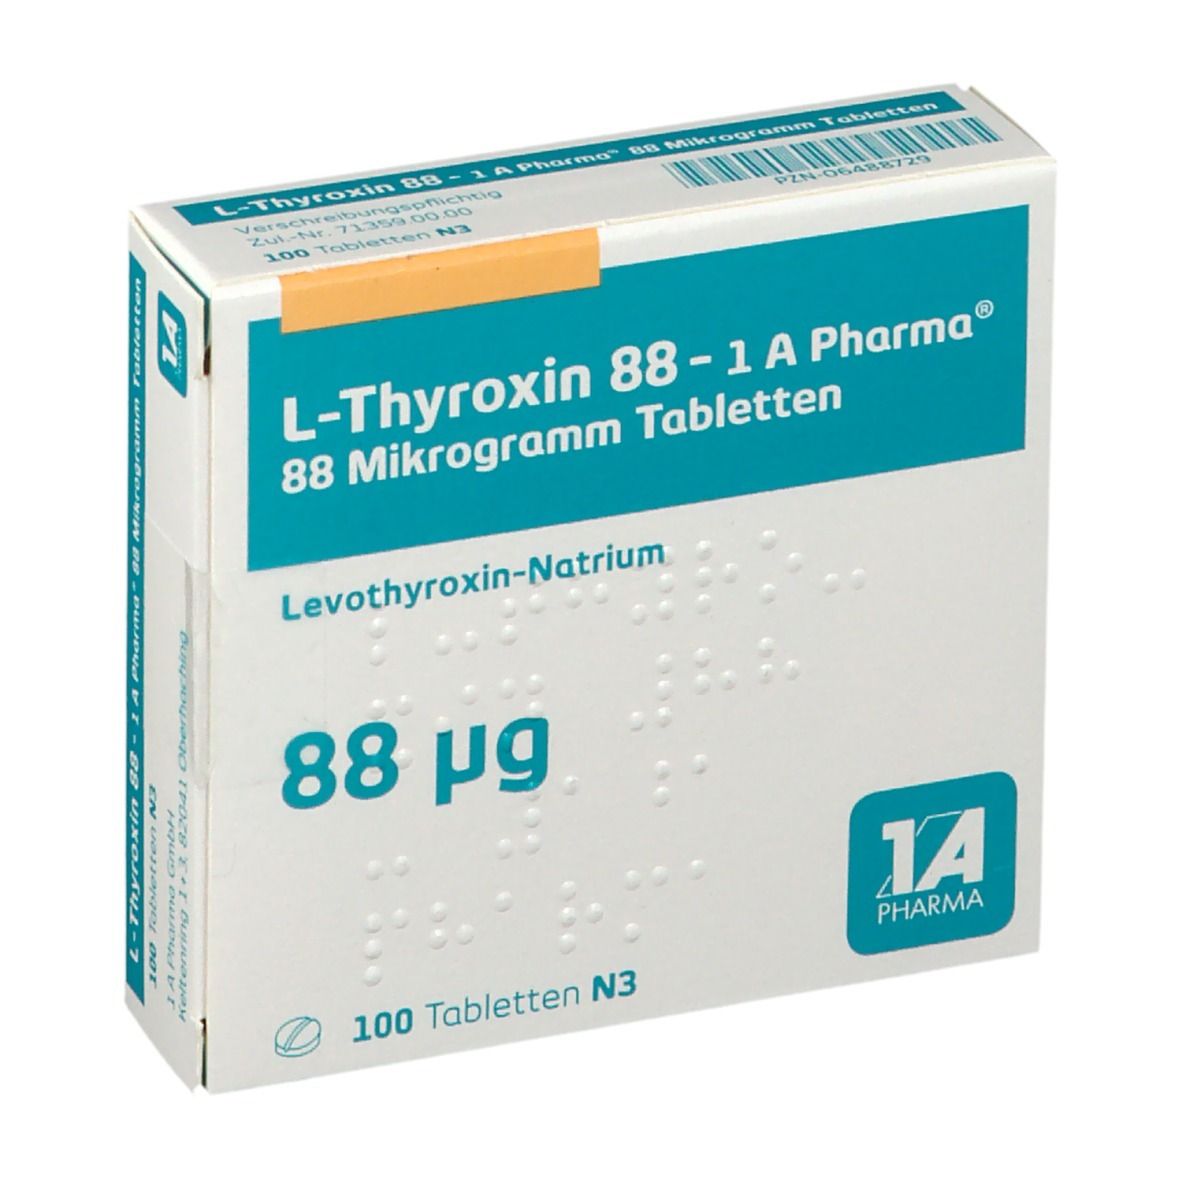 L Thyroxin 88 1A Pharma®